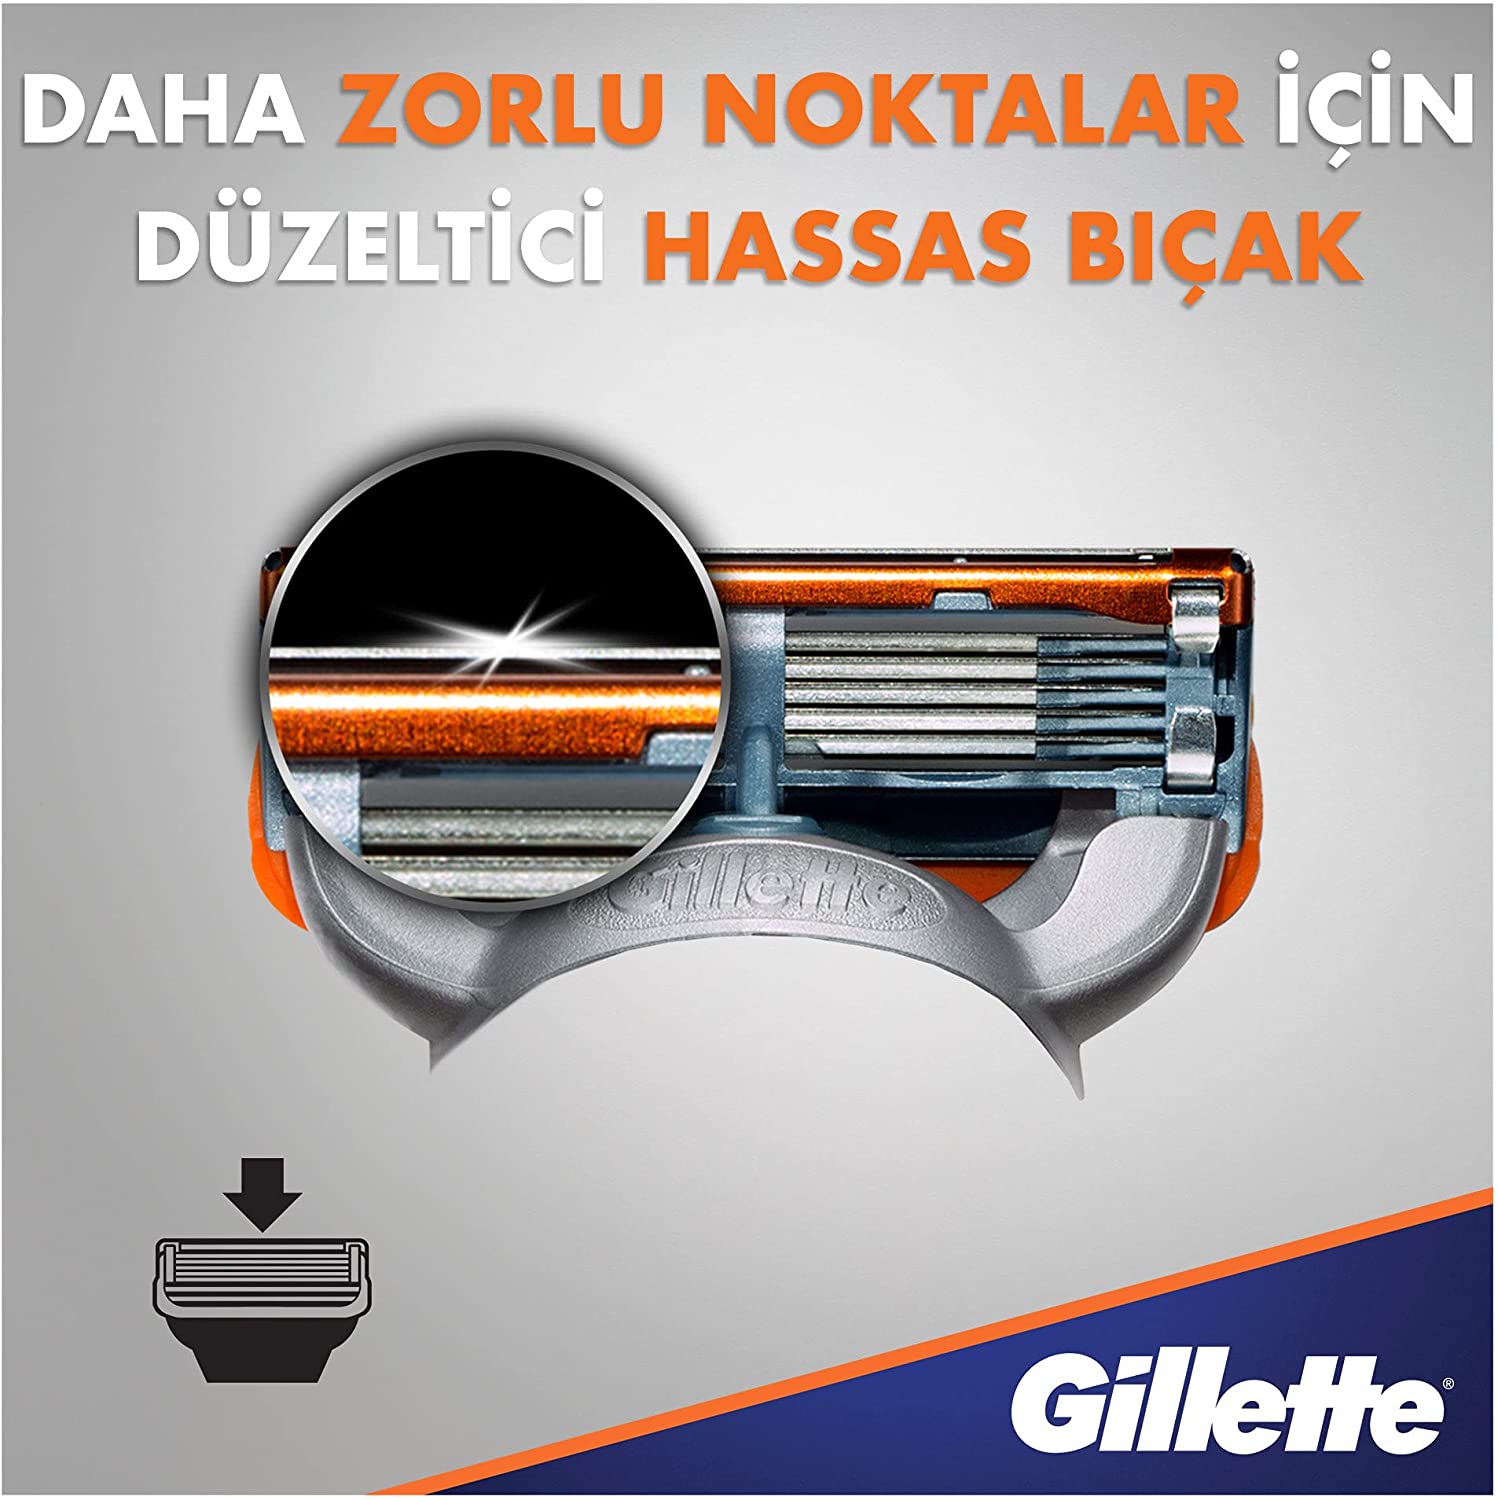 Auslaufmodell Gillette Fusion5 Rasierklingen Power für Herren (1x8)